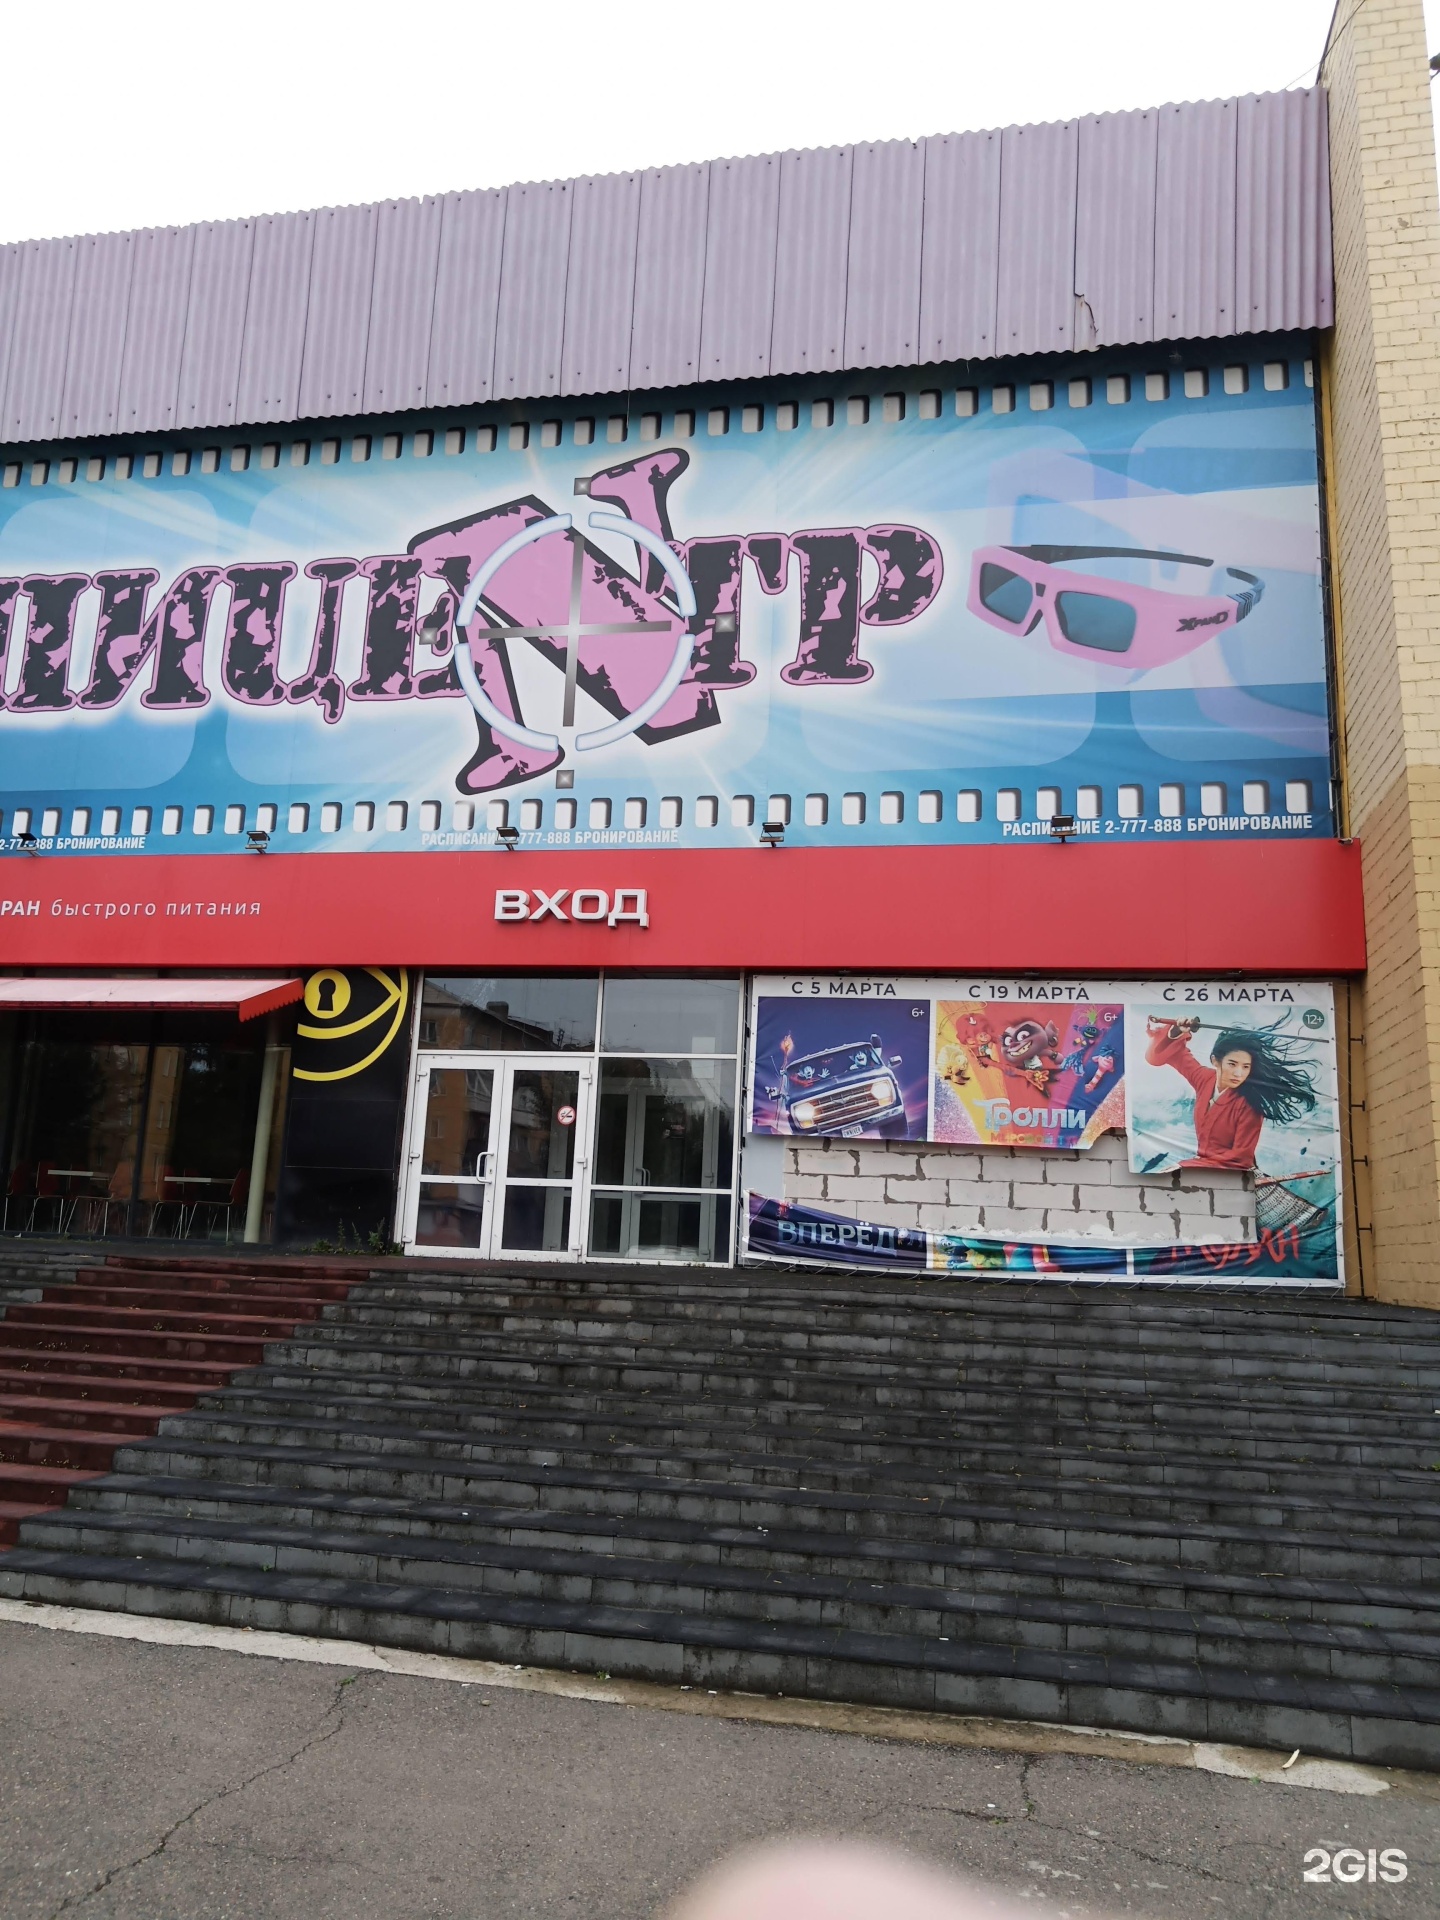 Кинотеатр красноярск расписание и цена